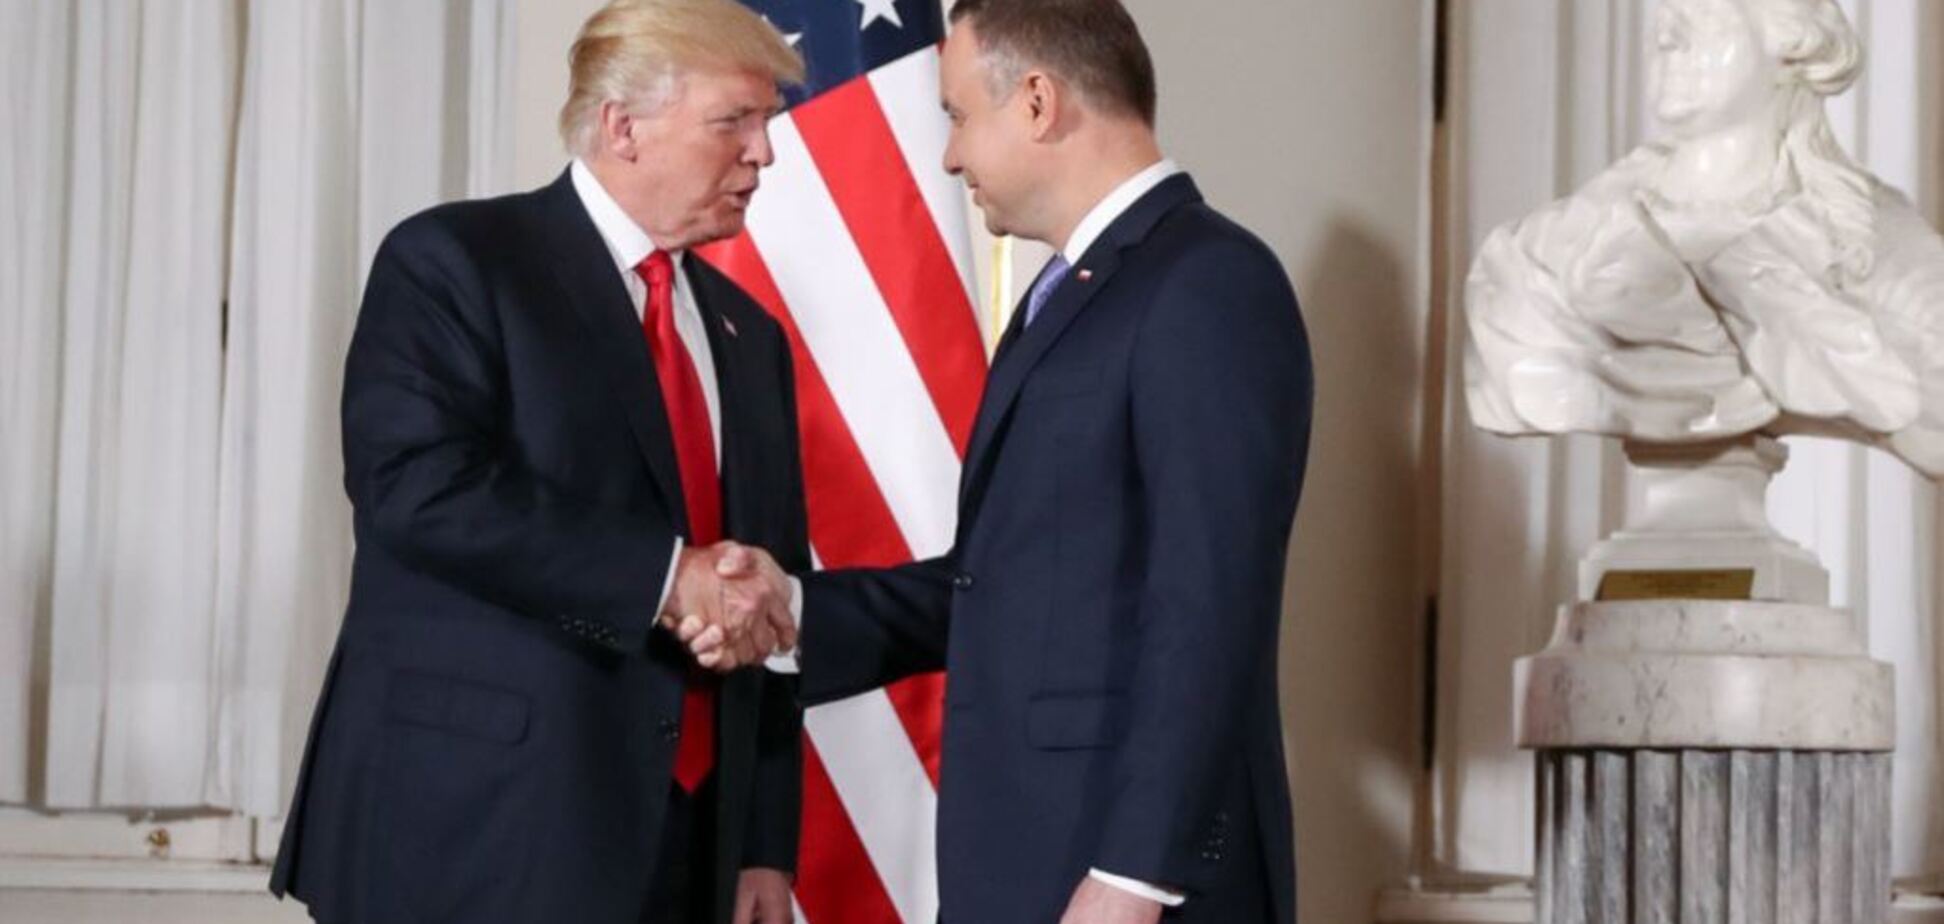 '' Цілує руку!'' У Польщі спалахнув скандал через ''ганебне'' фото Дуди з Трампом